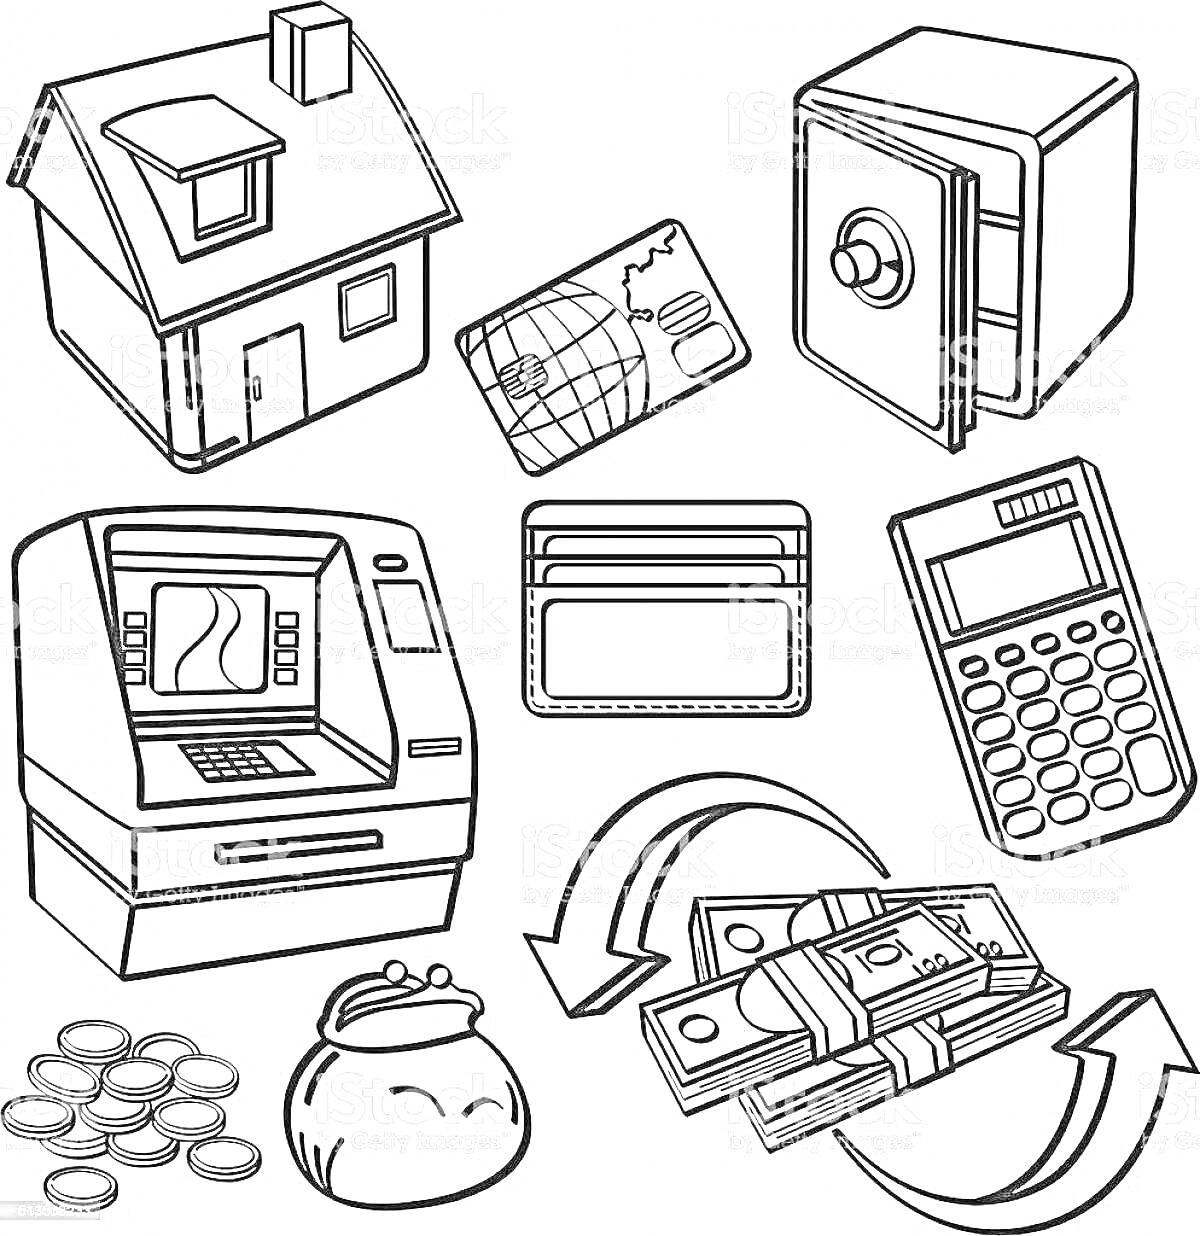 Раскраска Банкомат, сейф, дом, кредитная карта, кошелек с монетами, пачка денег, карточки, калькулятор